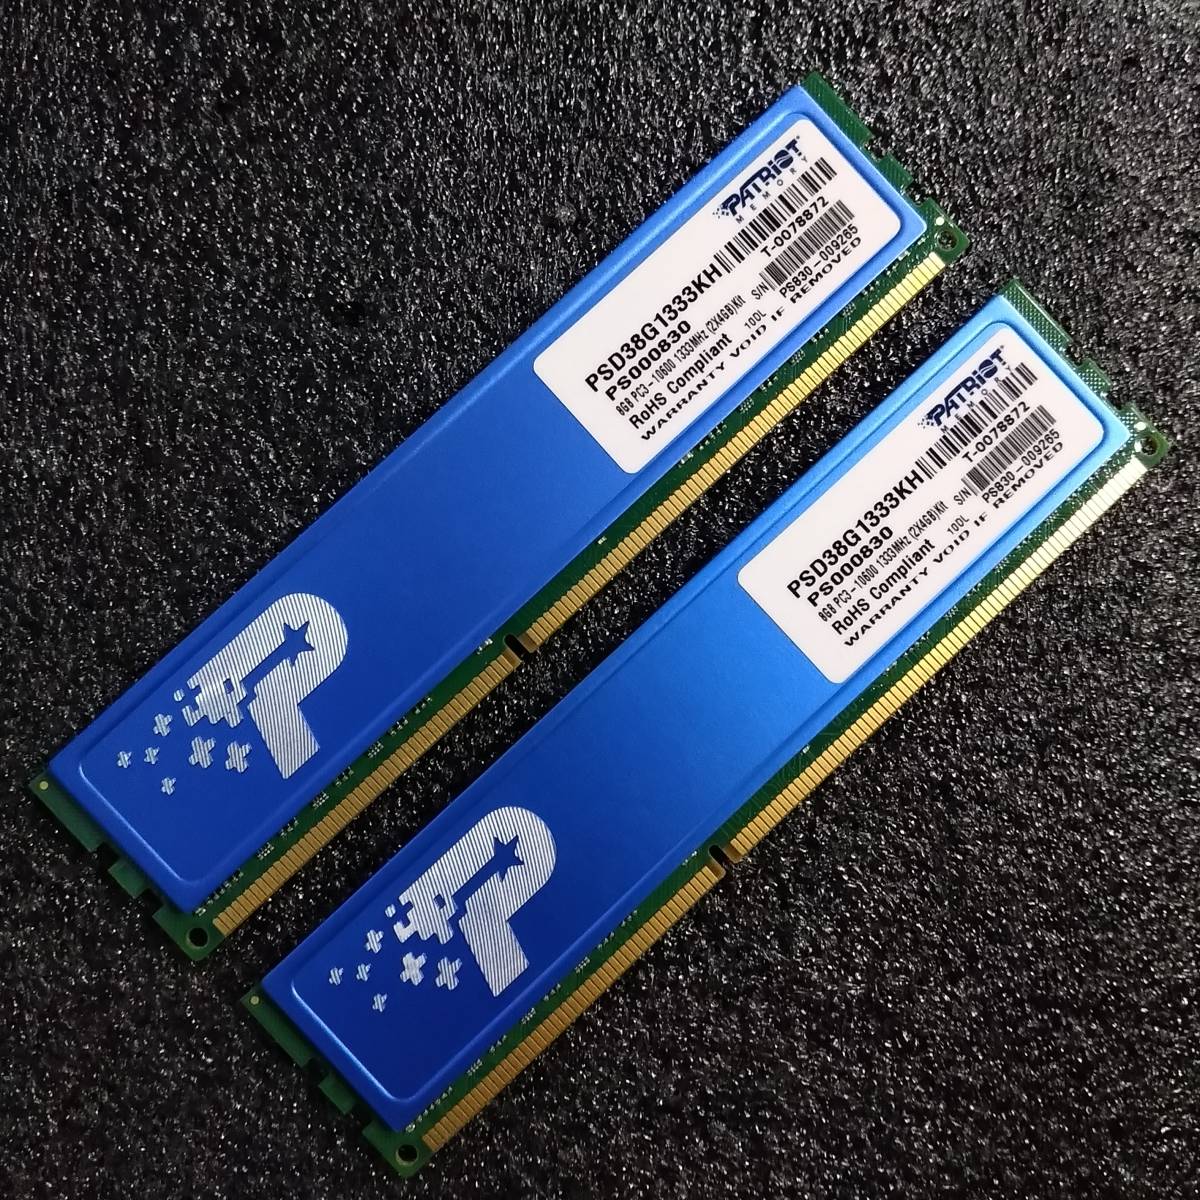 【中古】DDR3メモリ 8GB[4GB2枚組] Patriot PSD38G1333KH [DDR3-1333 PC3-10600] 